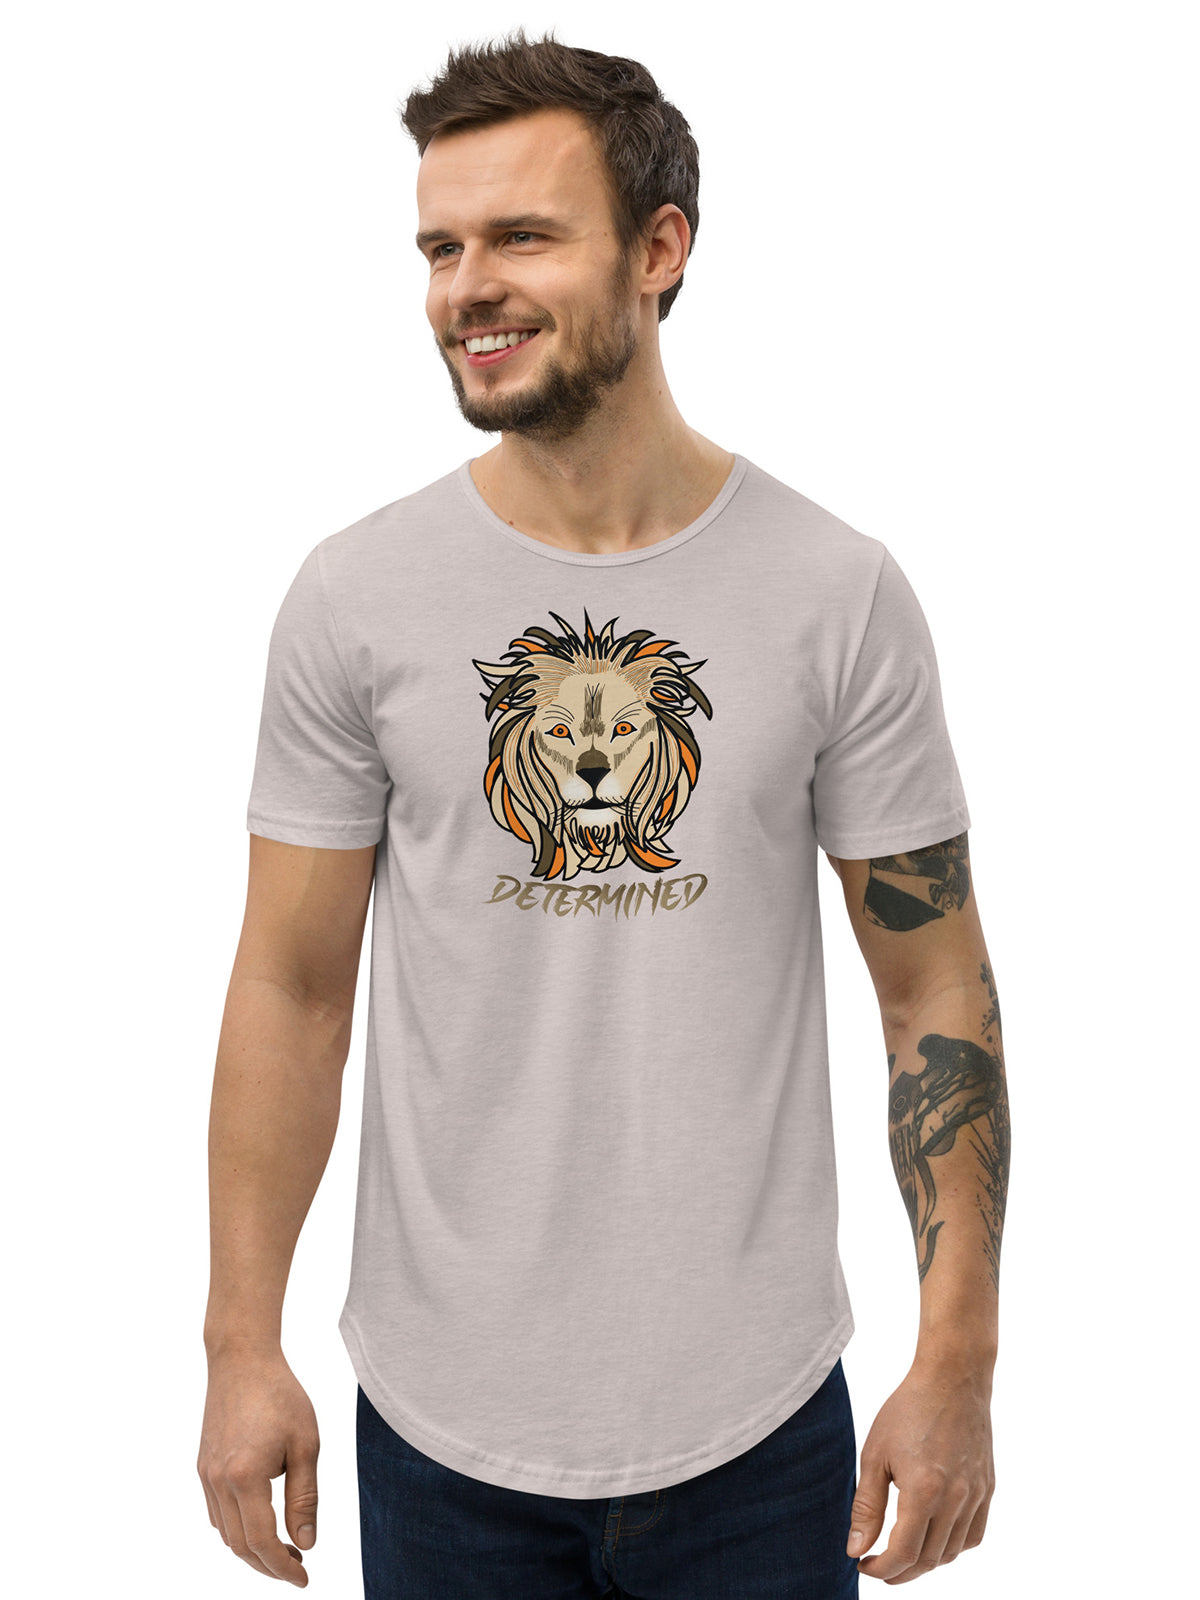 Determined Leon - Premium T-Shirt